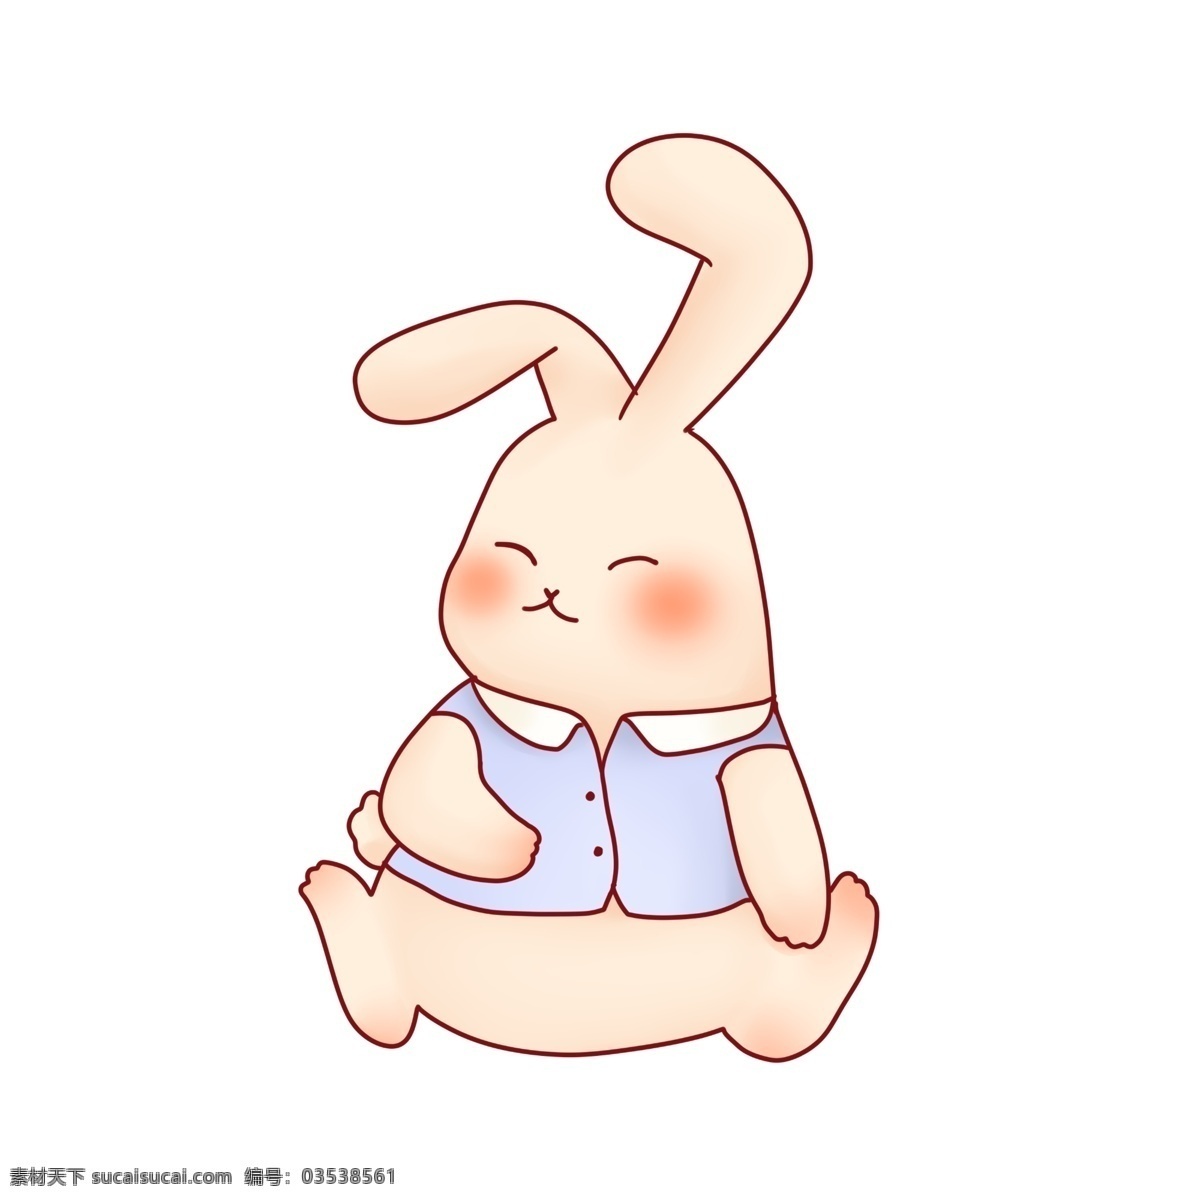 清新 甜美 可爱 拟人化 小 兔子 小兔子 动物 服装 儿童插画 耳朵 兔耳朵 萌 少女风